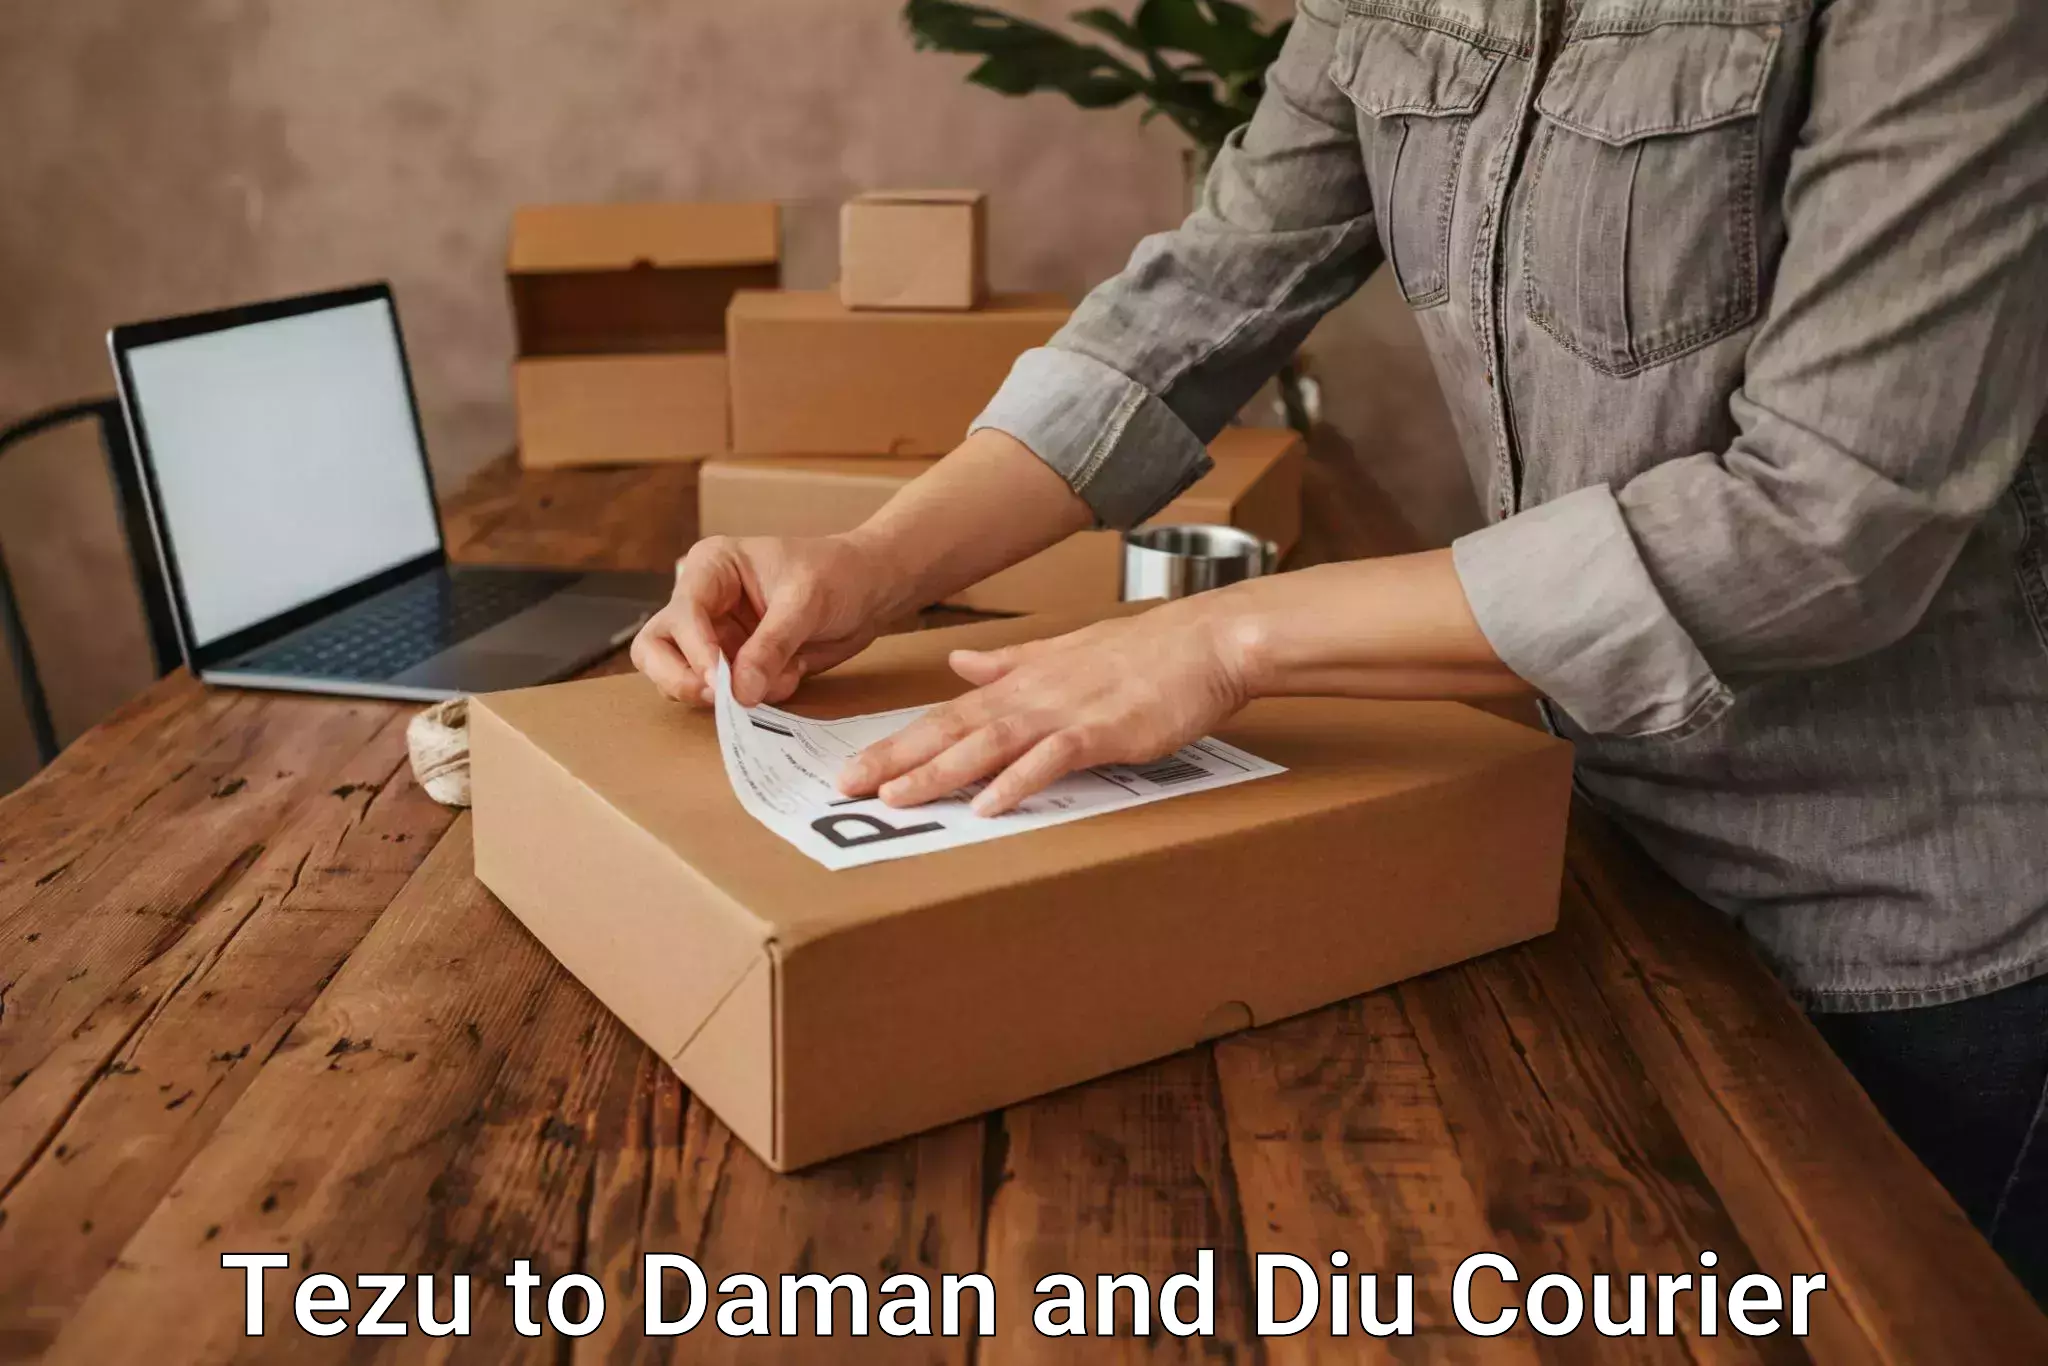 Professional parcel services Tezu to Daman